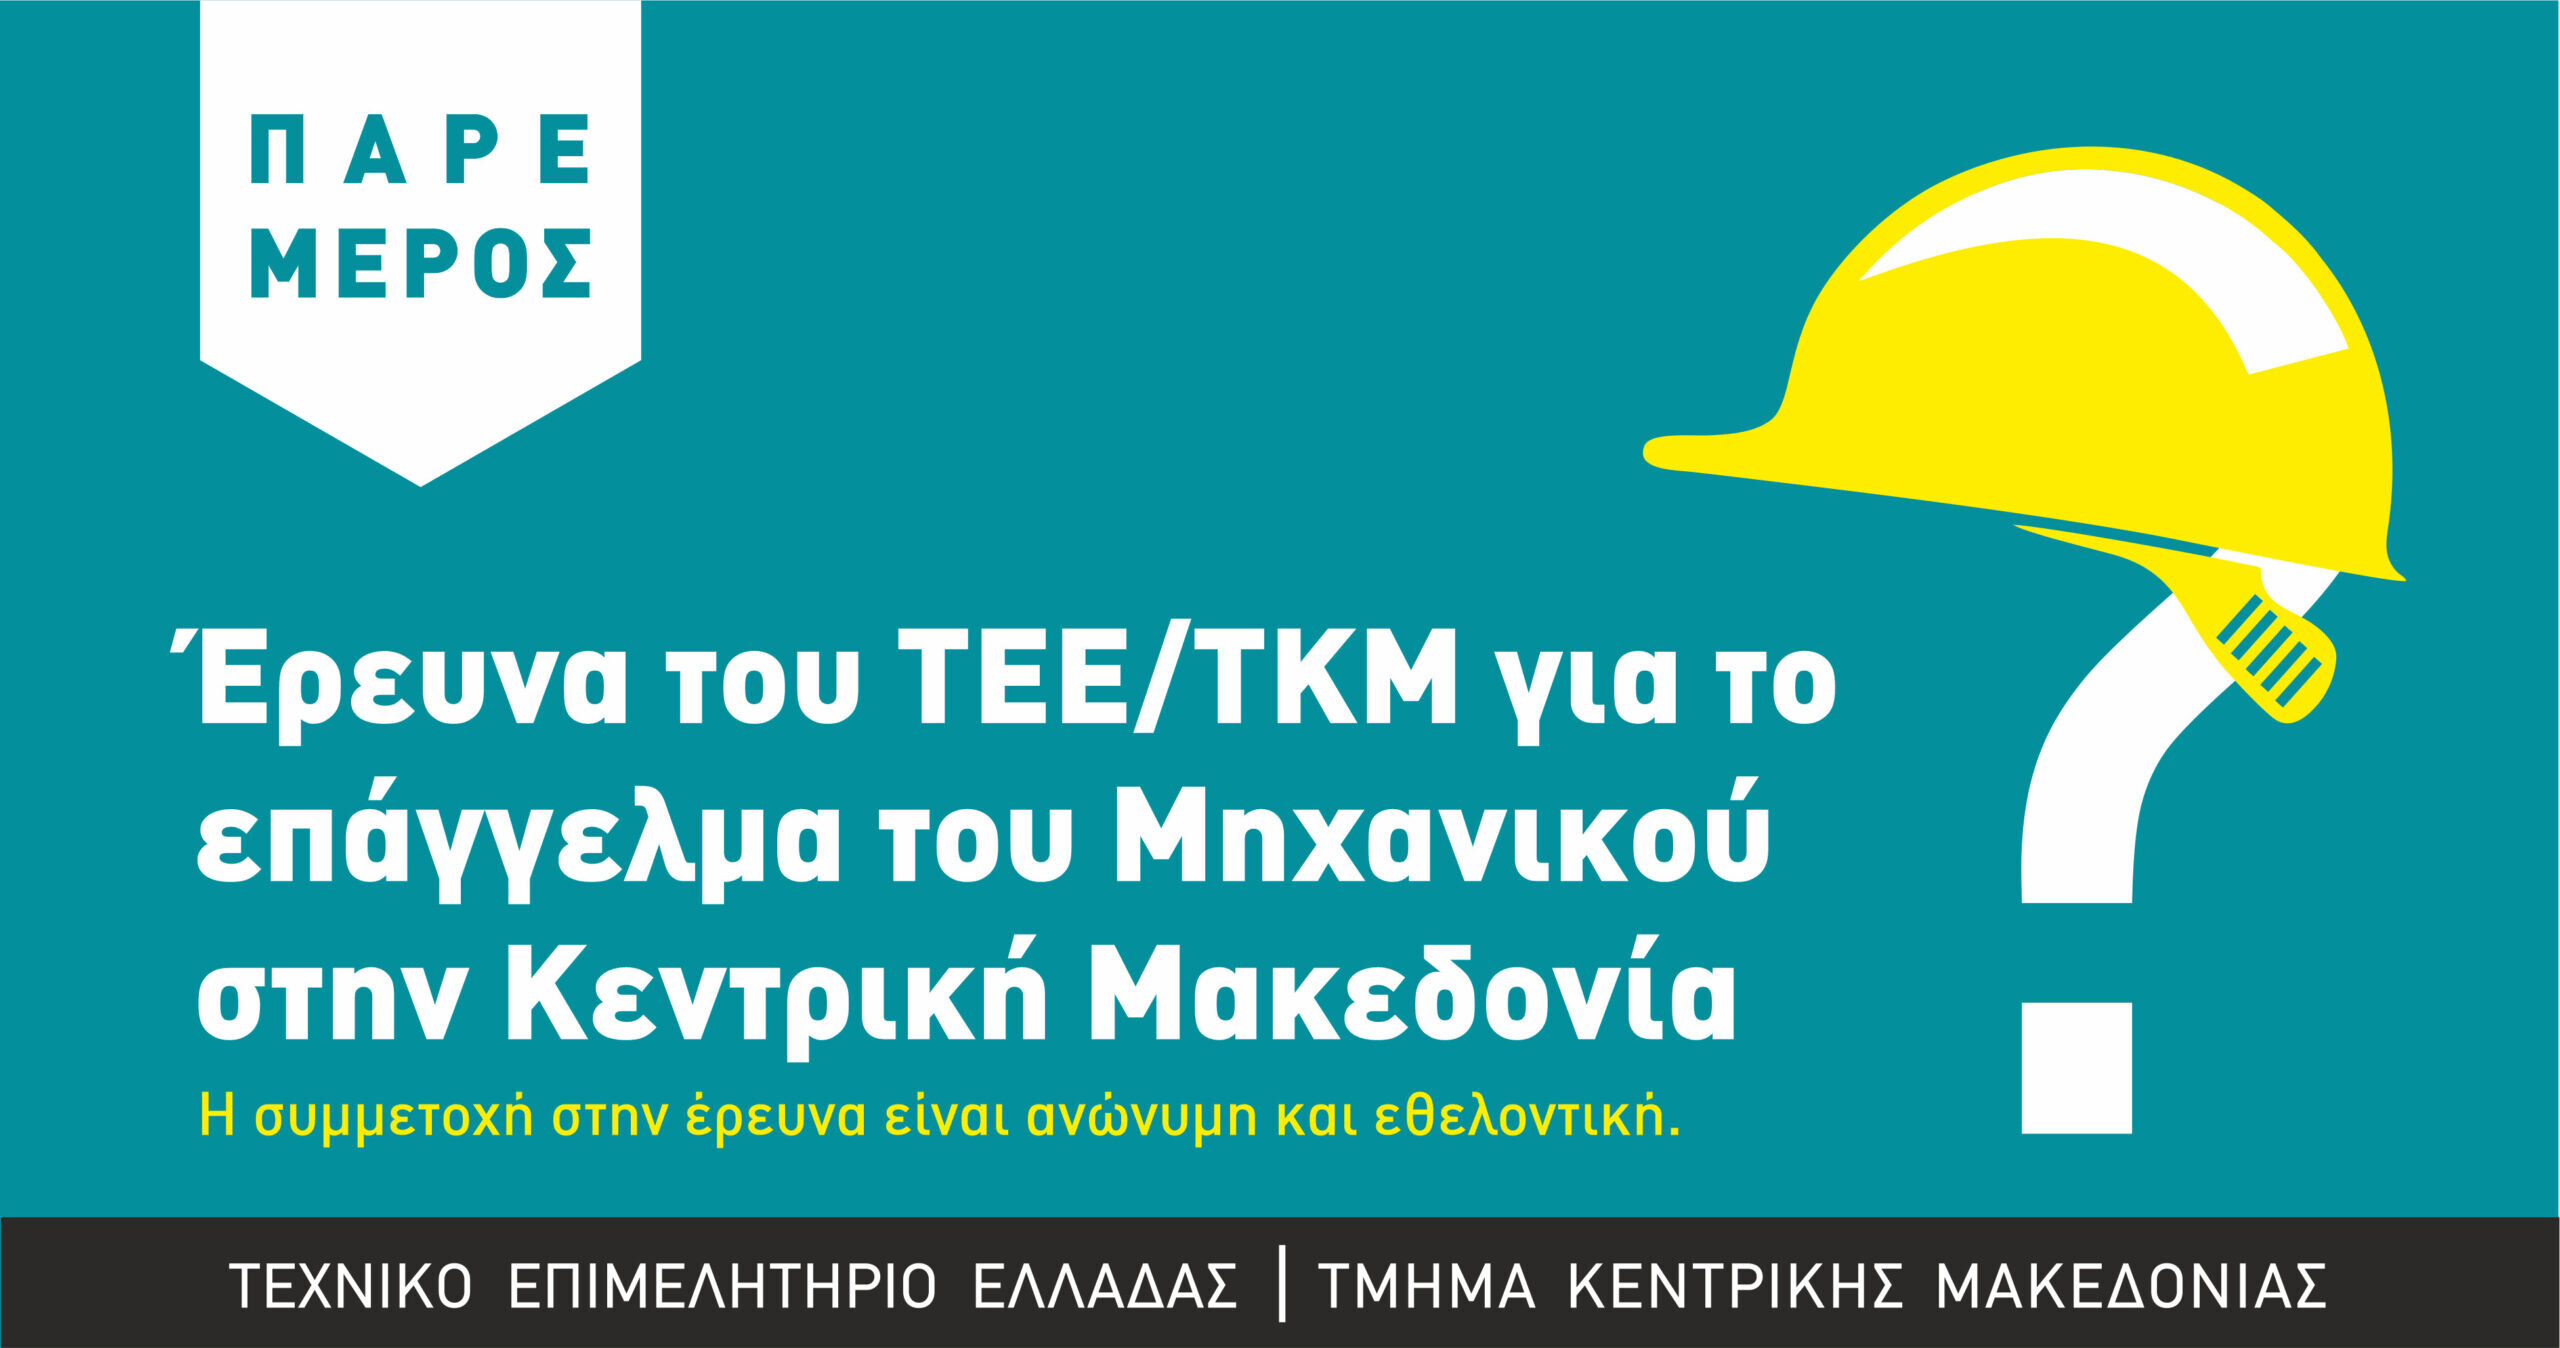 More information about "Έρευνα του ΤΕΕ/ΤΚΜ για το επάγγελμα του Μηχανικού στην Κεντρική Μακεδονία- πώς θα λάβετε μέρος"